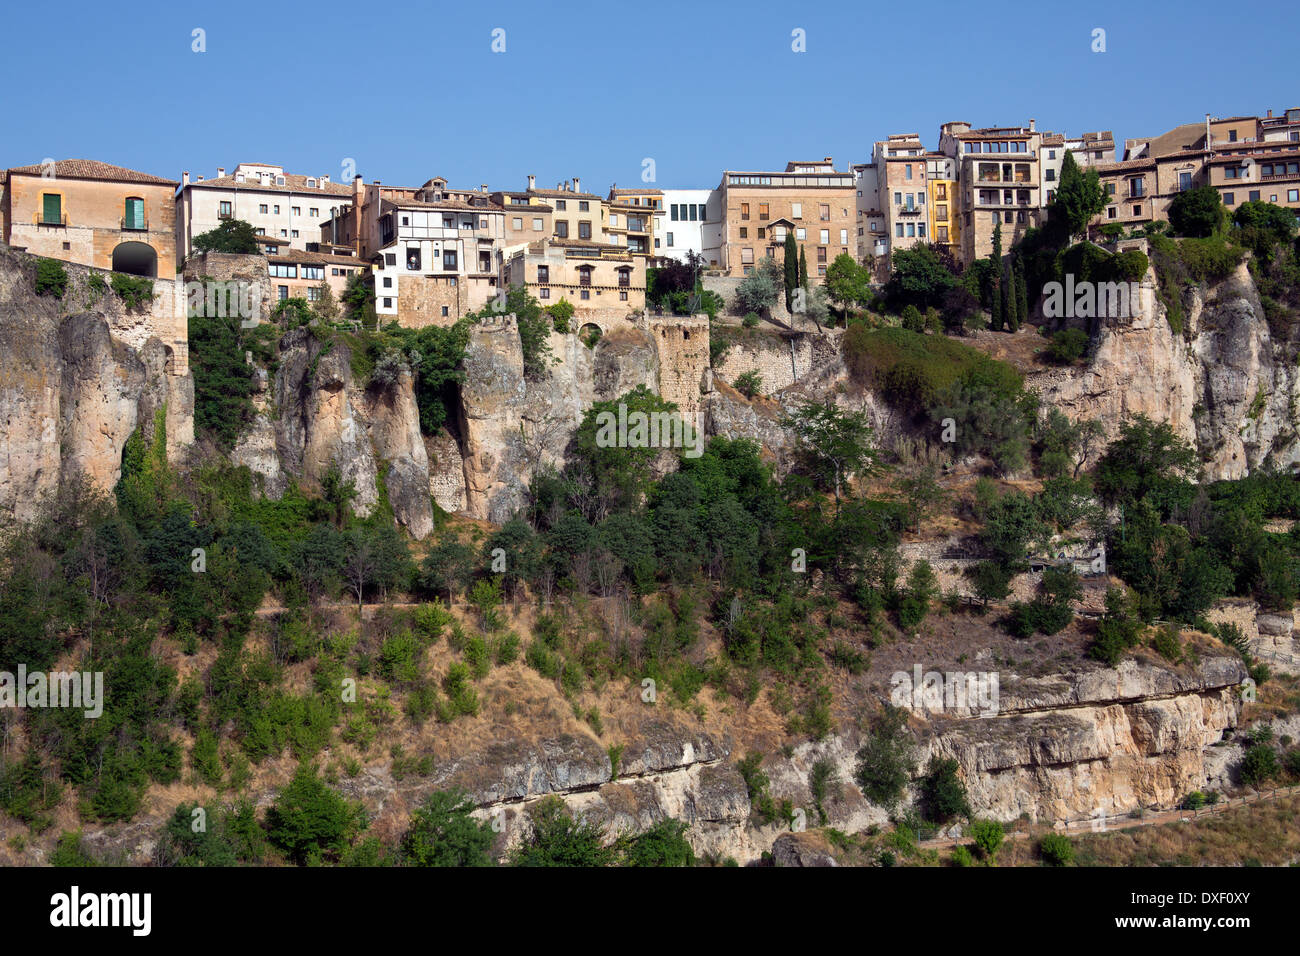 La falaise de maisons dans la vieille ville de la ville de Cuenca dans la région de Castille-La Manche du centre de l'Espagne. Banque D'Images